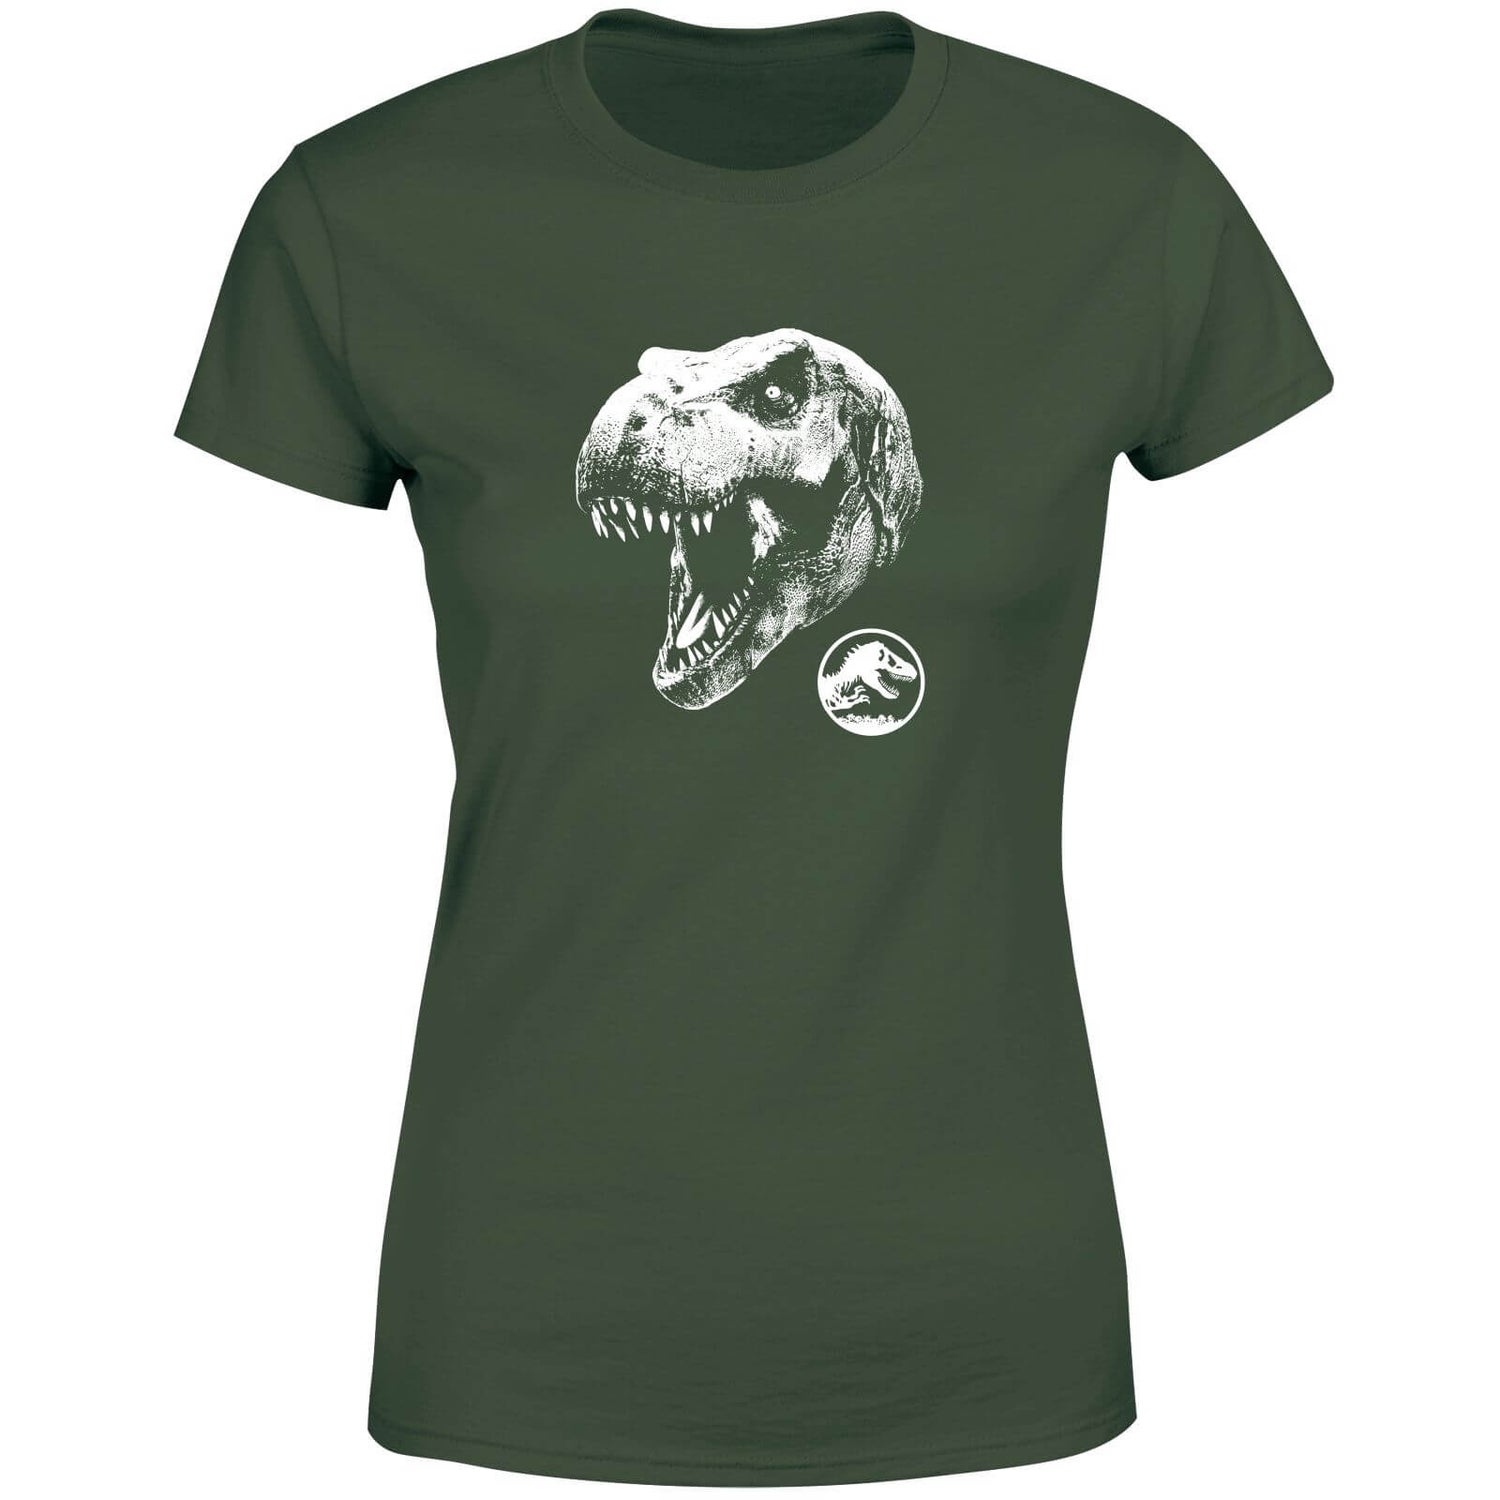 Jurassic Park T Rex Women's T-Shirt - Green